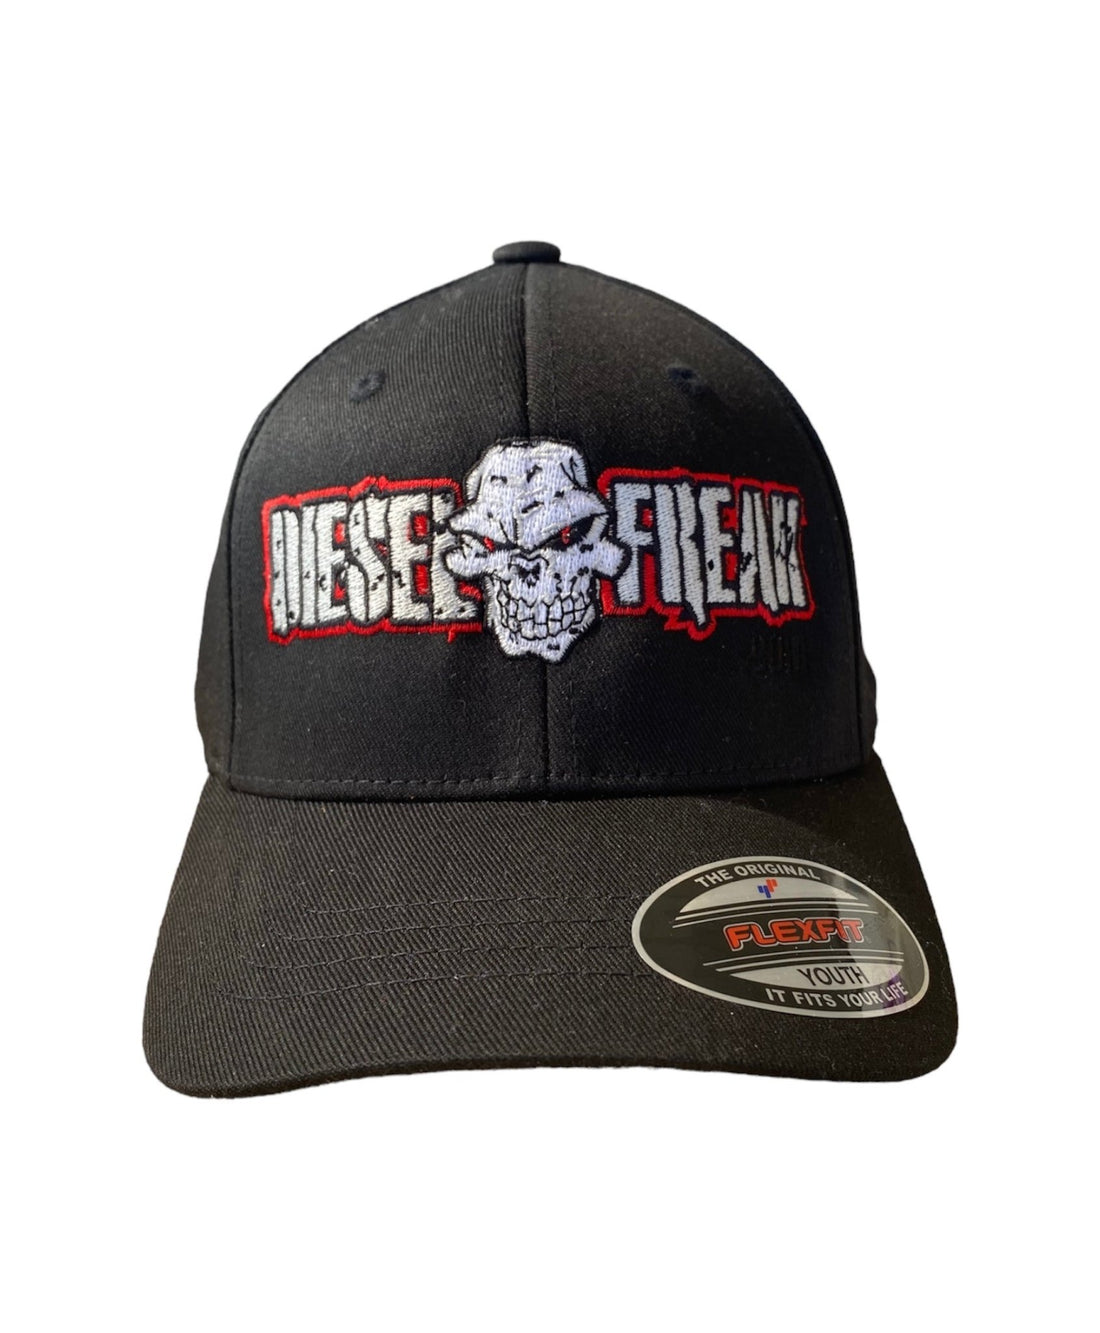 Red and Black Diesel Freak Hat - Diesel Freak